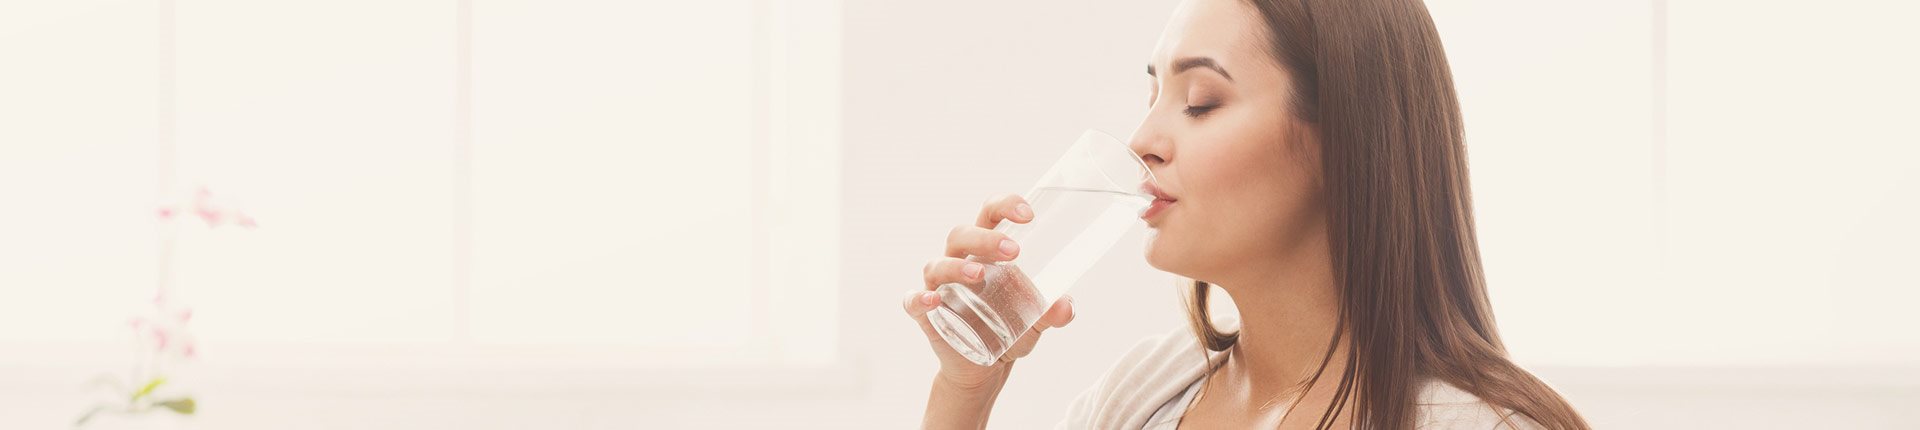 Ile wody powinna pić kobieta w ciąży?